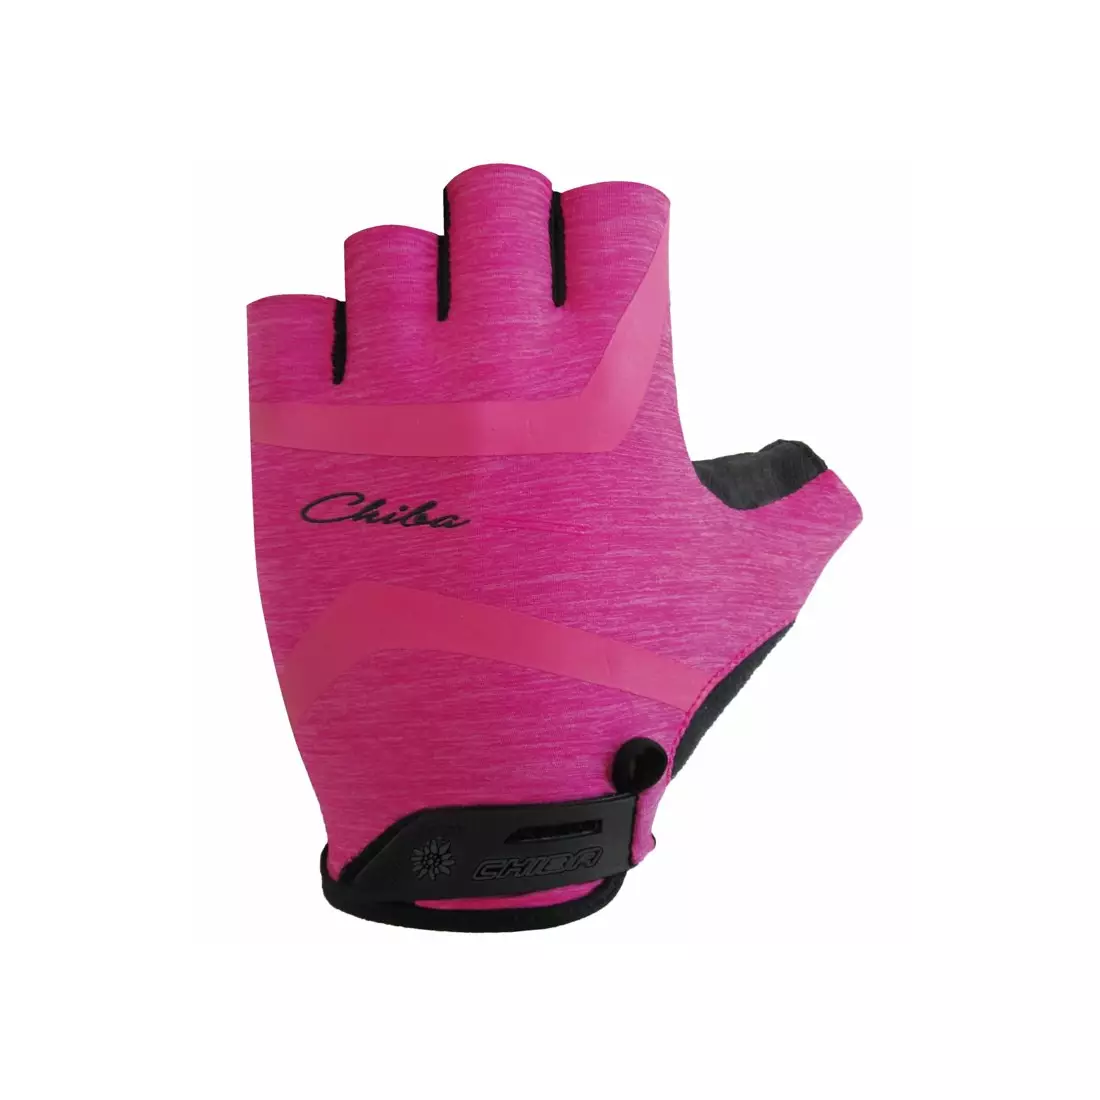 CHIBA LADY SUPER LIGHT dámské cyklistické rukavice růžové barvy